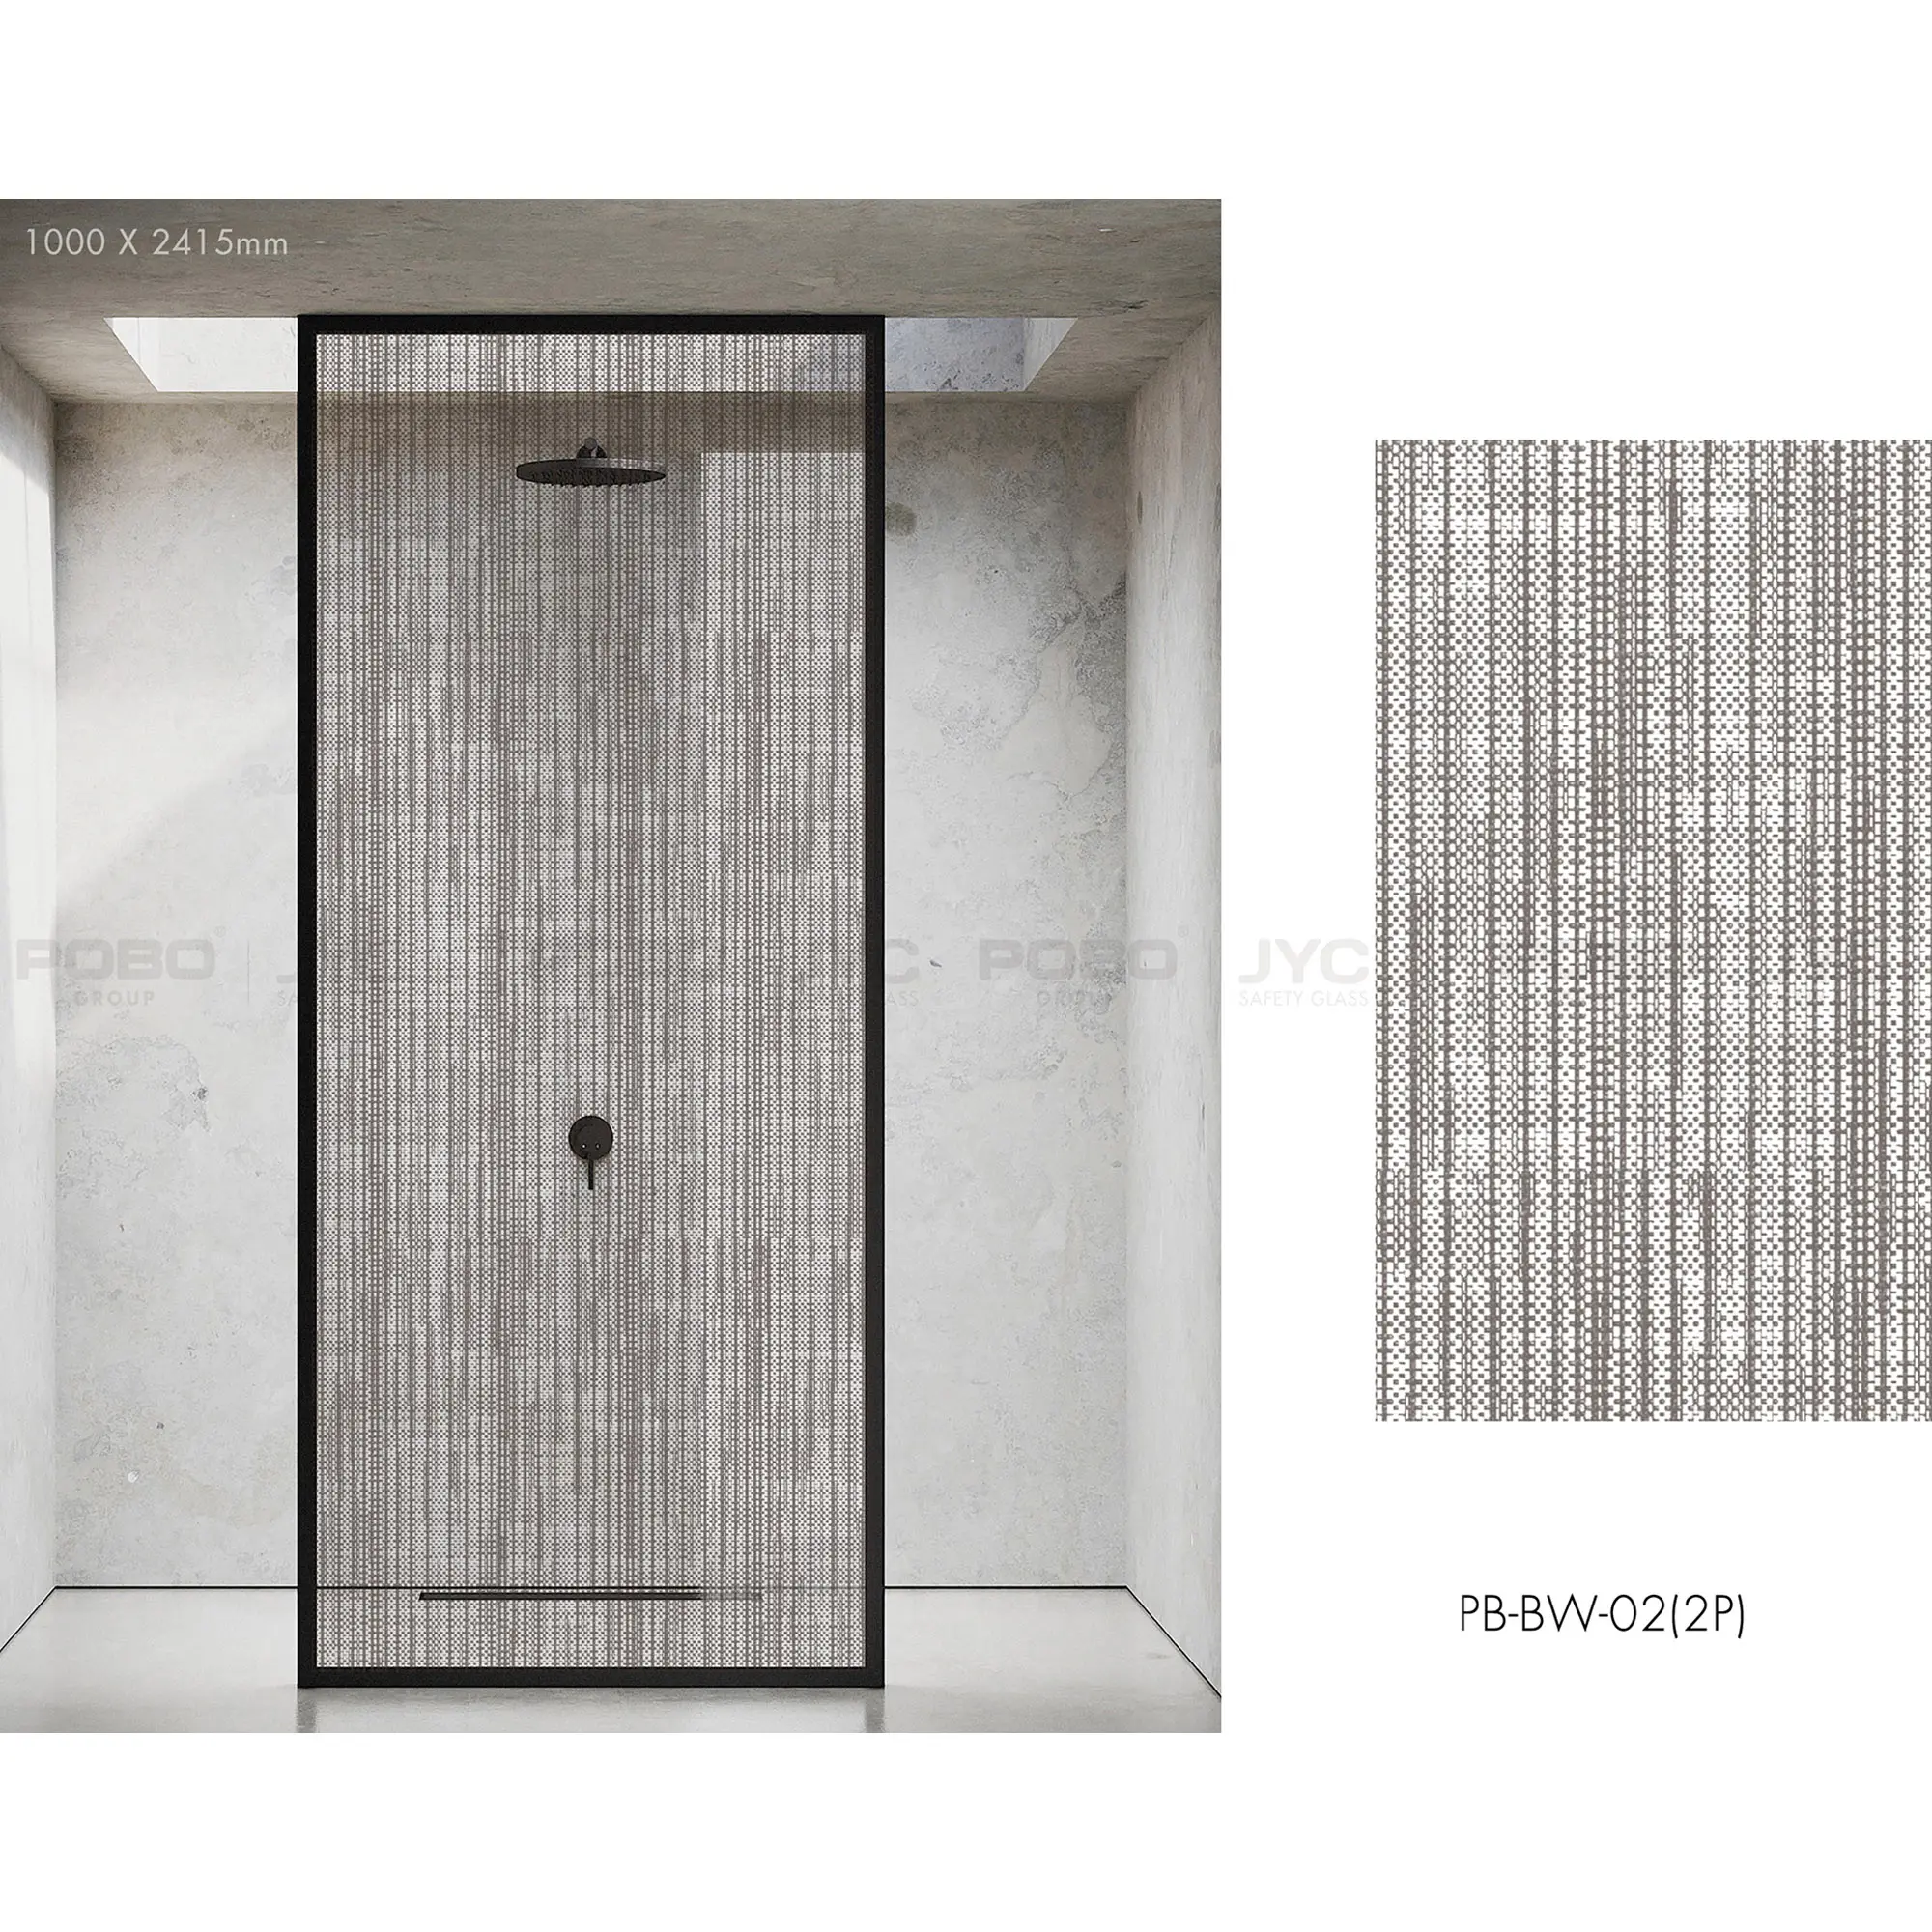 Cabina de ducha de vidrio templado de tendencia minimalista, Partición de vidrio de ducha, vidrio de puerta de ducha de seguridad impermeable